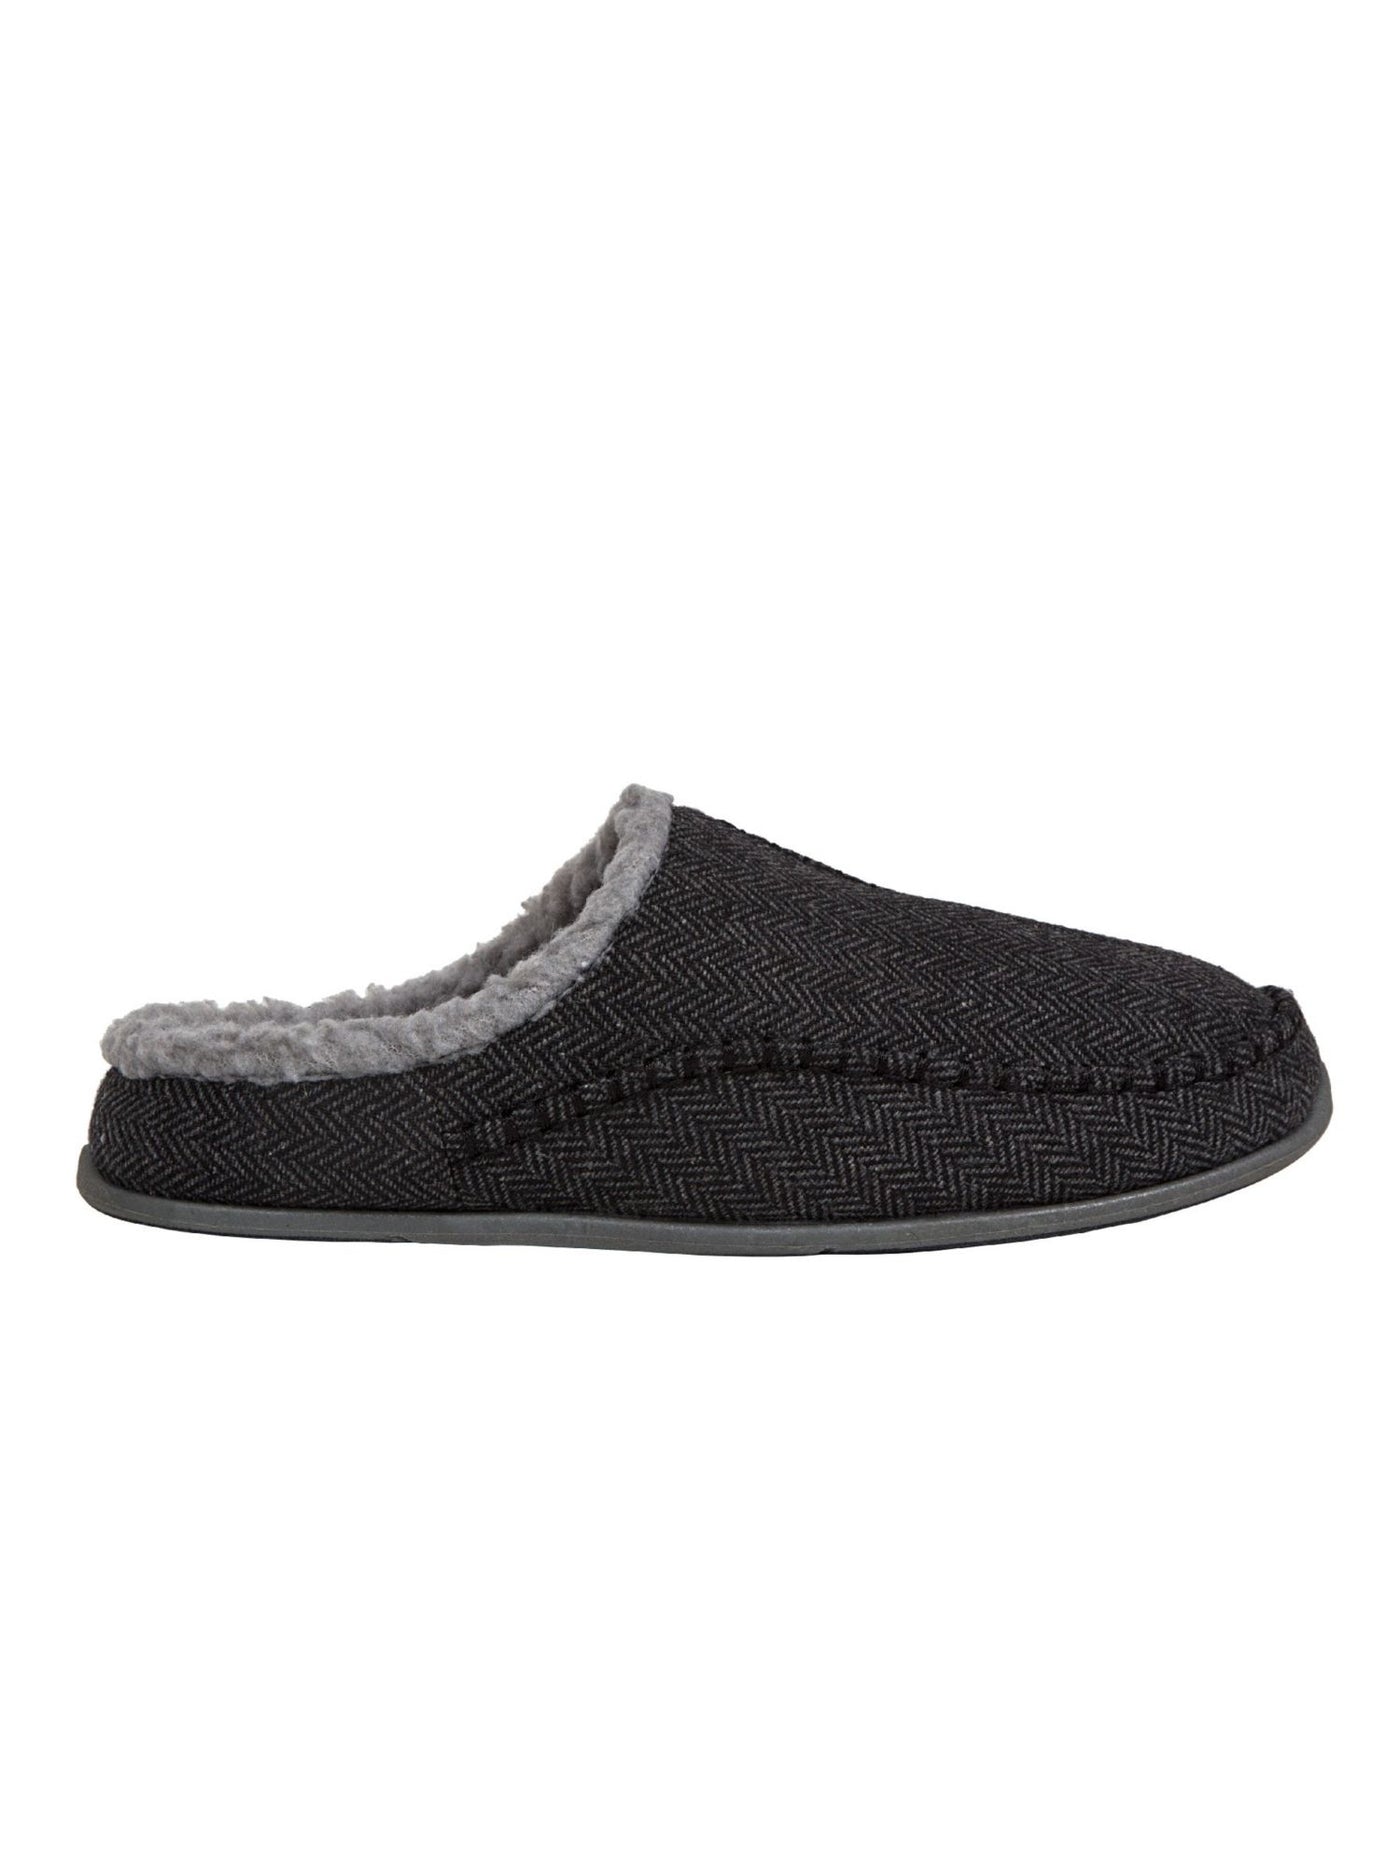 DEER STAGS SLIPPEROOZ Mens Black Herringbone Comfort Nordic Round Toe Slip On Slippers Shoes 7 M